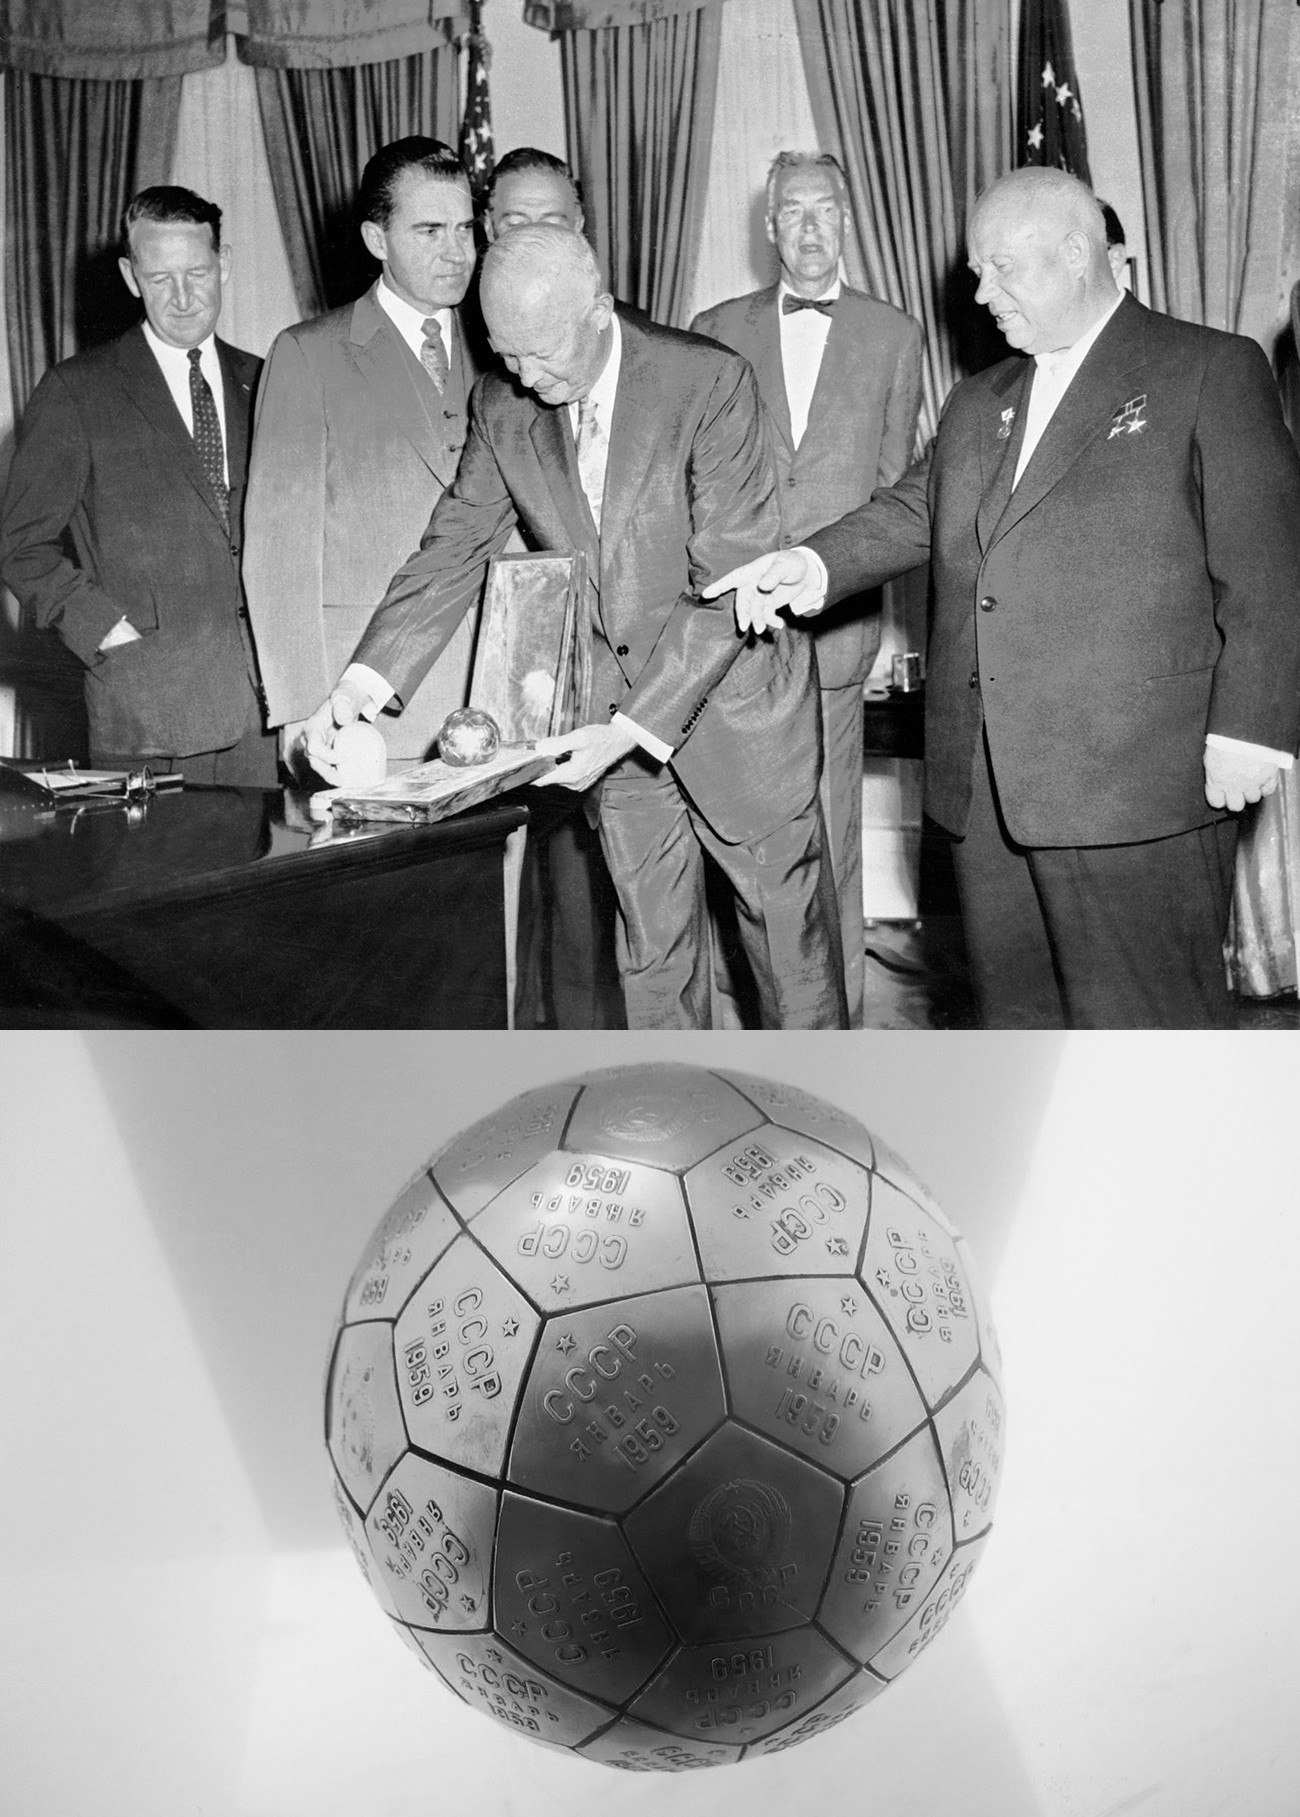 U nazočnosti potpredsjednika SAD-a Richarda Nixona (drugi slijeva) američki predsjednik Eisenhower (lijevo) promatra poklon (kopiju kugle s amblemima koja je poslana na Mjesec) dobiven od sovjetskog lidera Nikite Hruščova (desno) prilikom njegovog posjeta Americi 15. rujna 1959. u Washingtonu.
